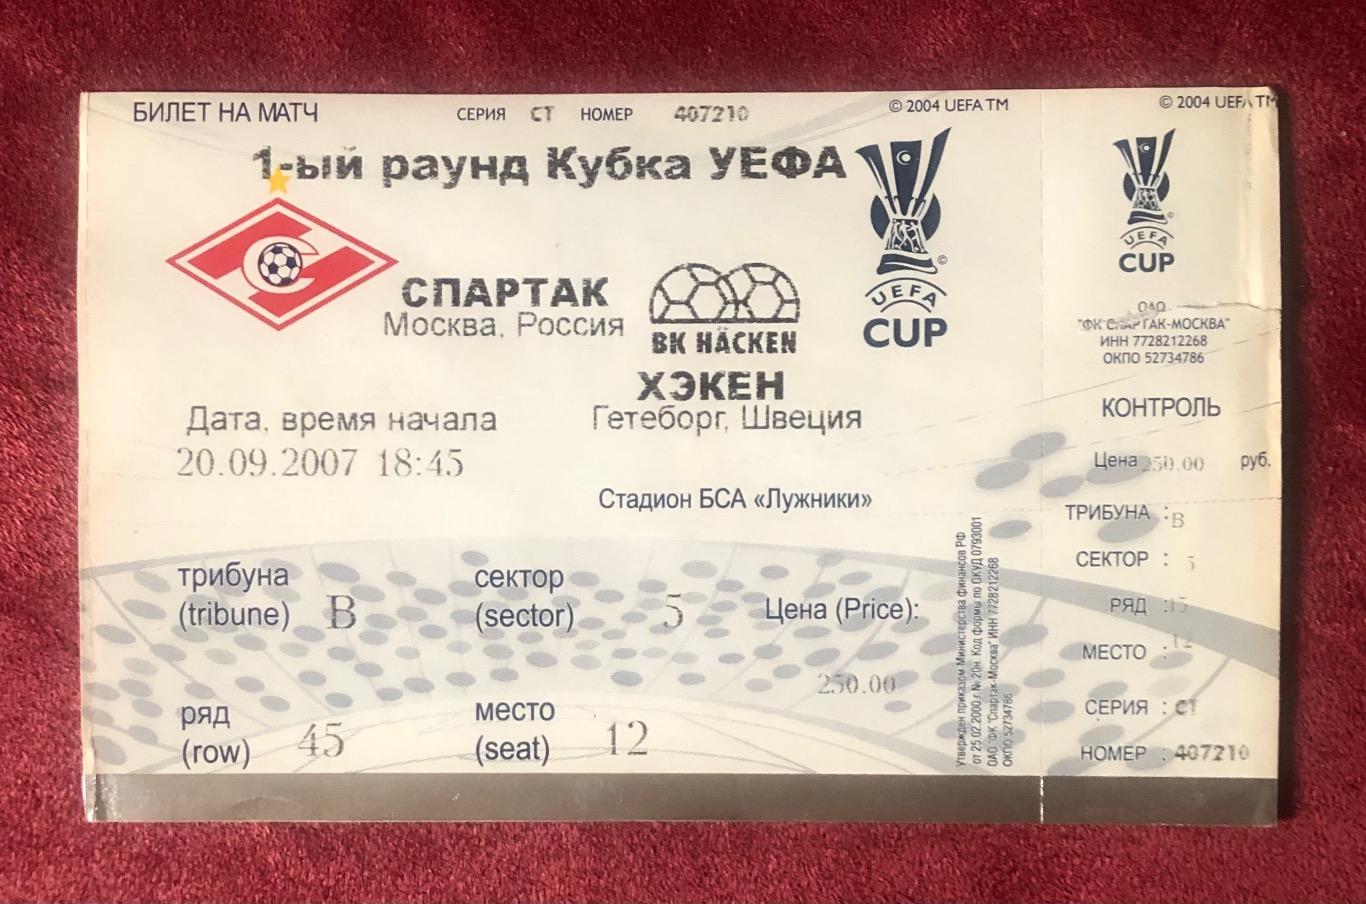 Билет Спартак Москва - Хэкен Гетеборг, 20.09.2007 с контролем